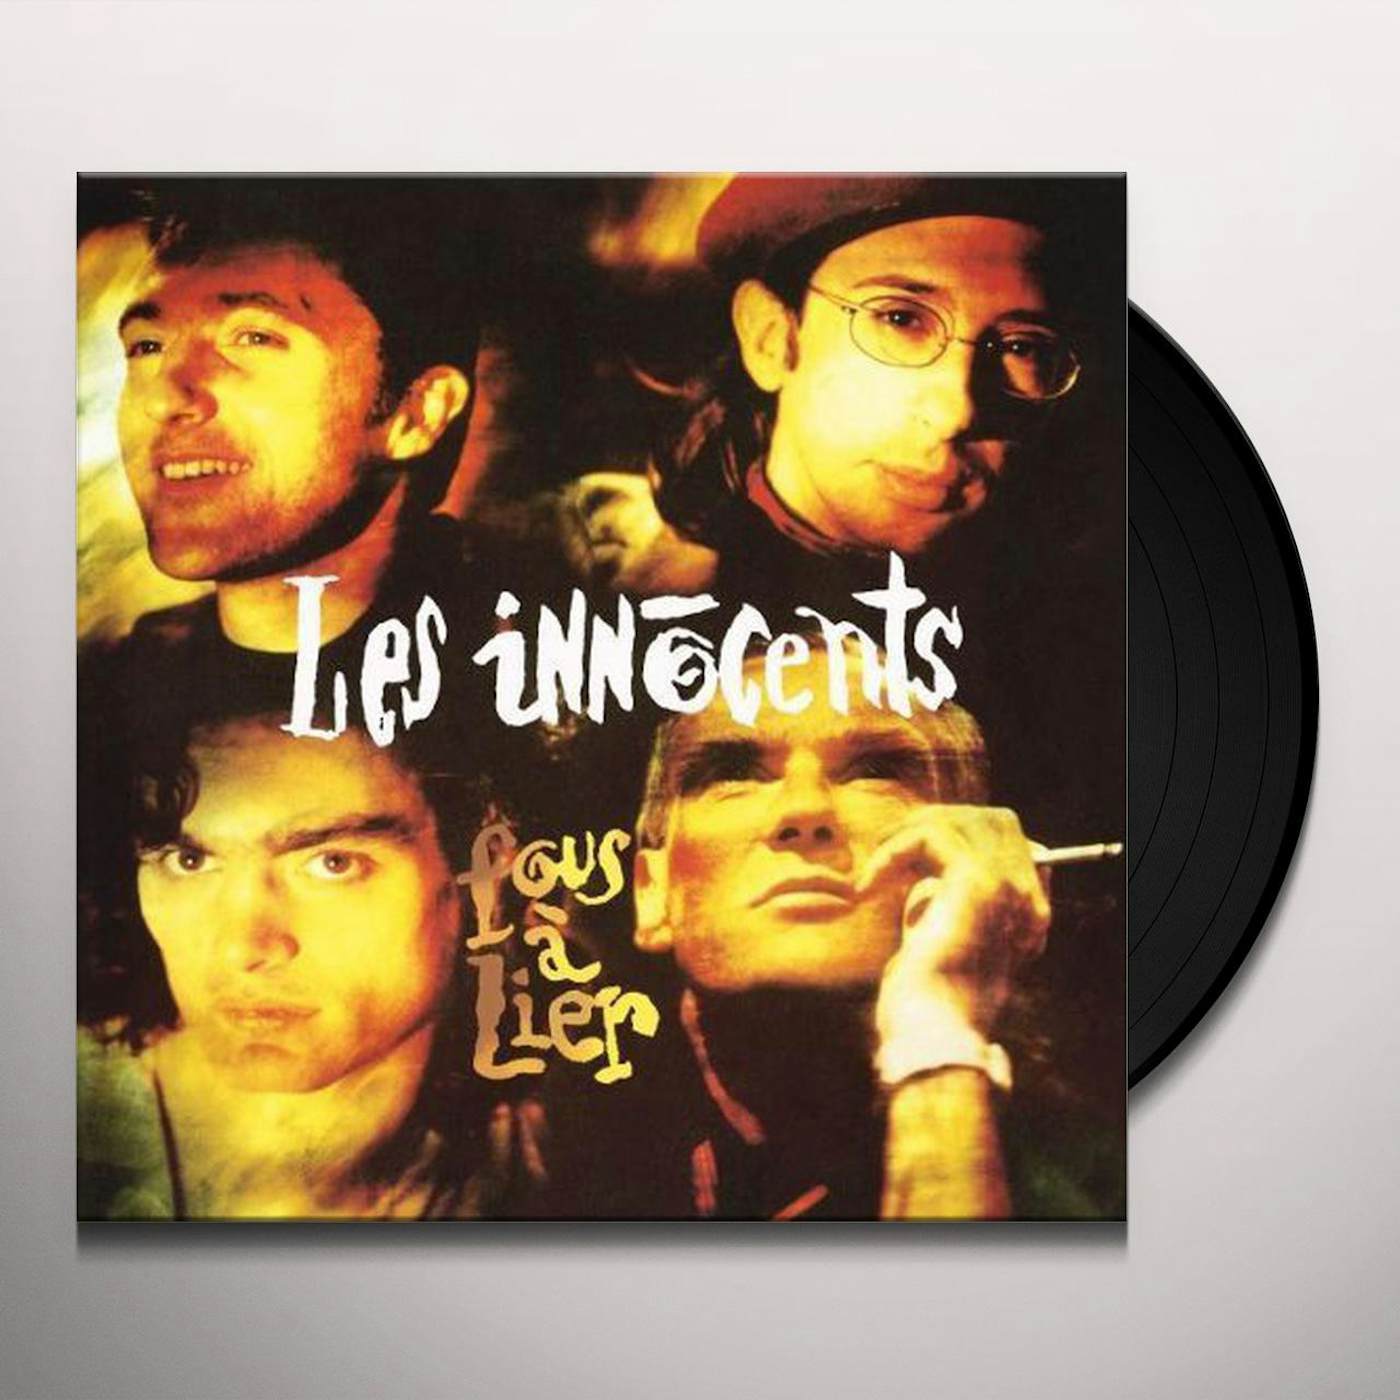 Les Innocents Fous a lier lp Vinyl Record